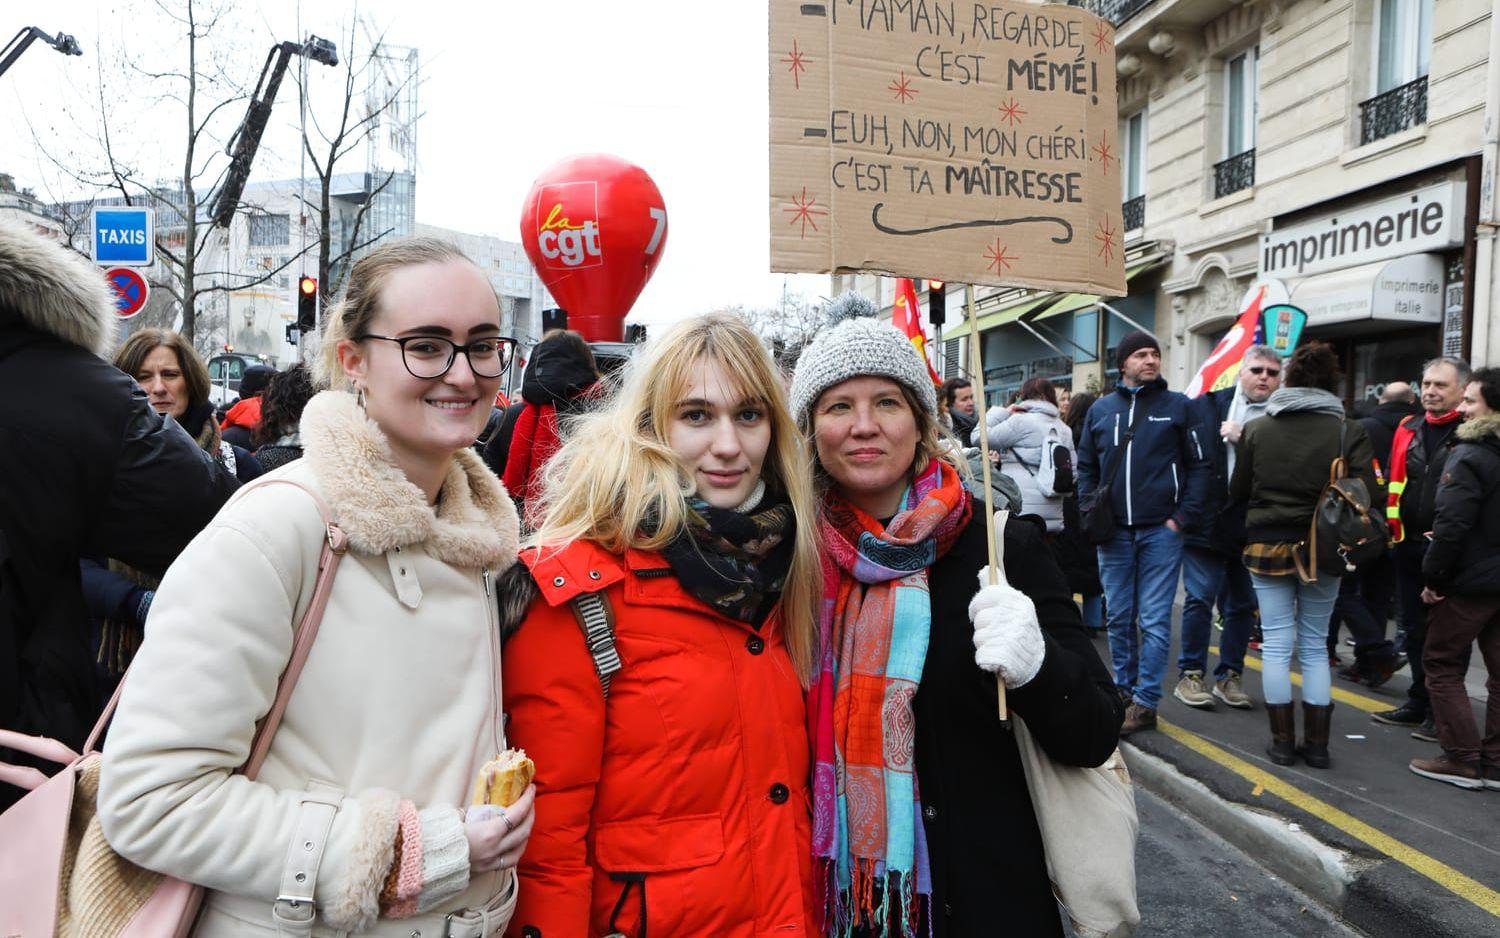 Anaëlle Fontaine, Thaïs Girard, Sophie de Tollennaere som alla tre är på plats för att demonstrera mot pensionsreformen.